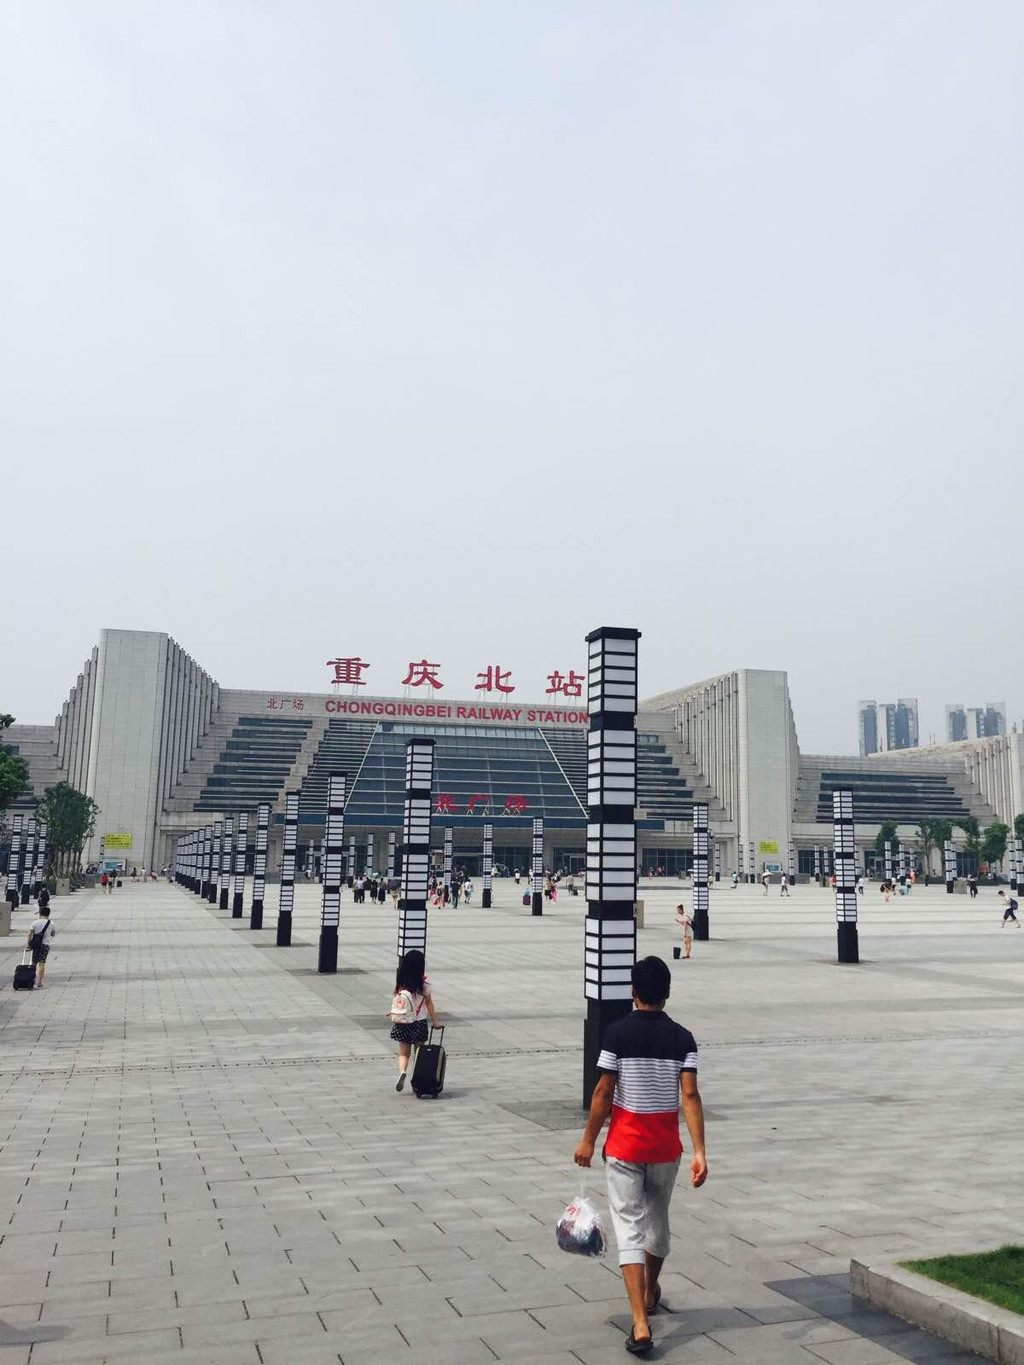                   重庆北火车站